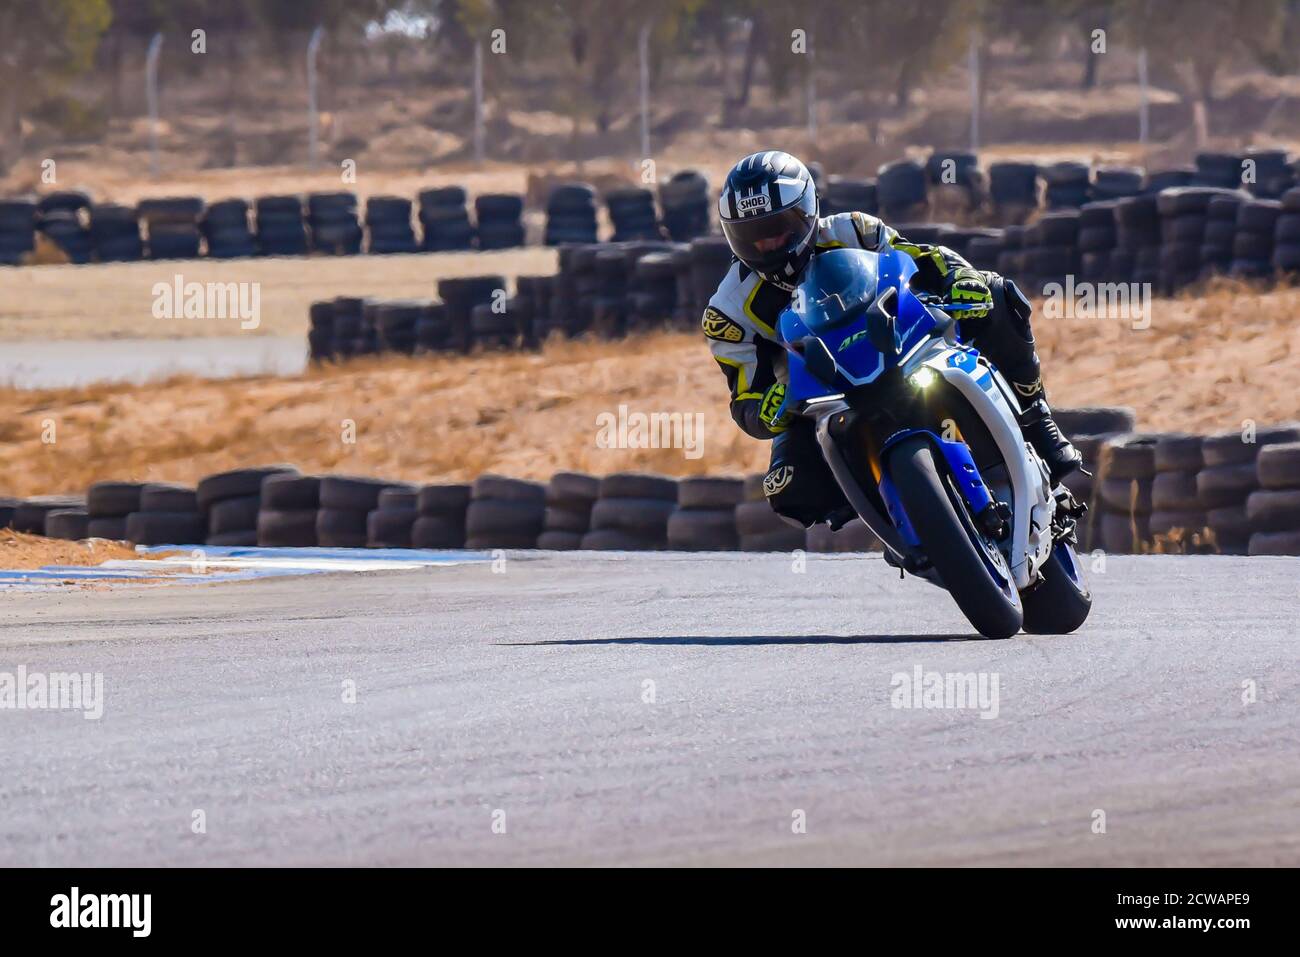 Motorrad-Rennen im Kreis. Fotografiert in Israel Stockfoto